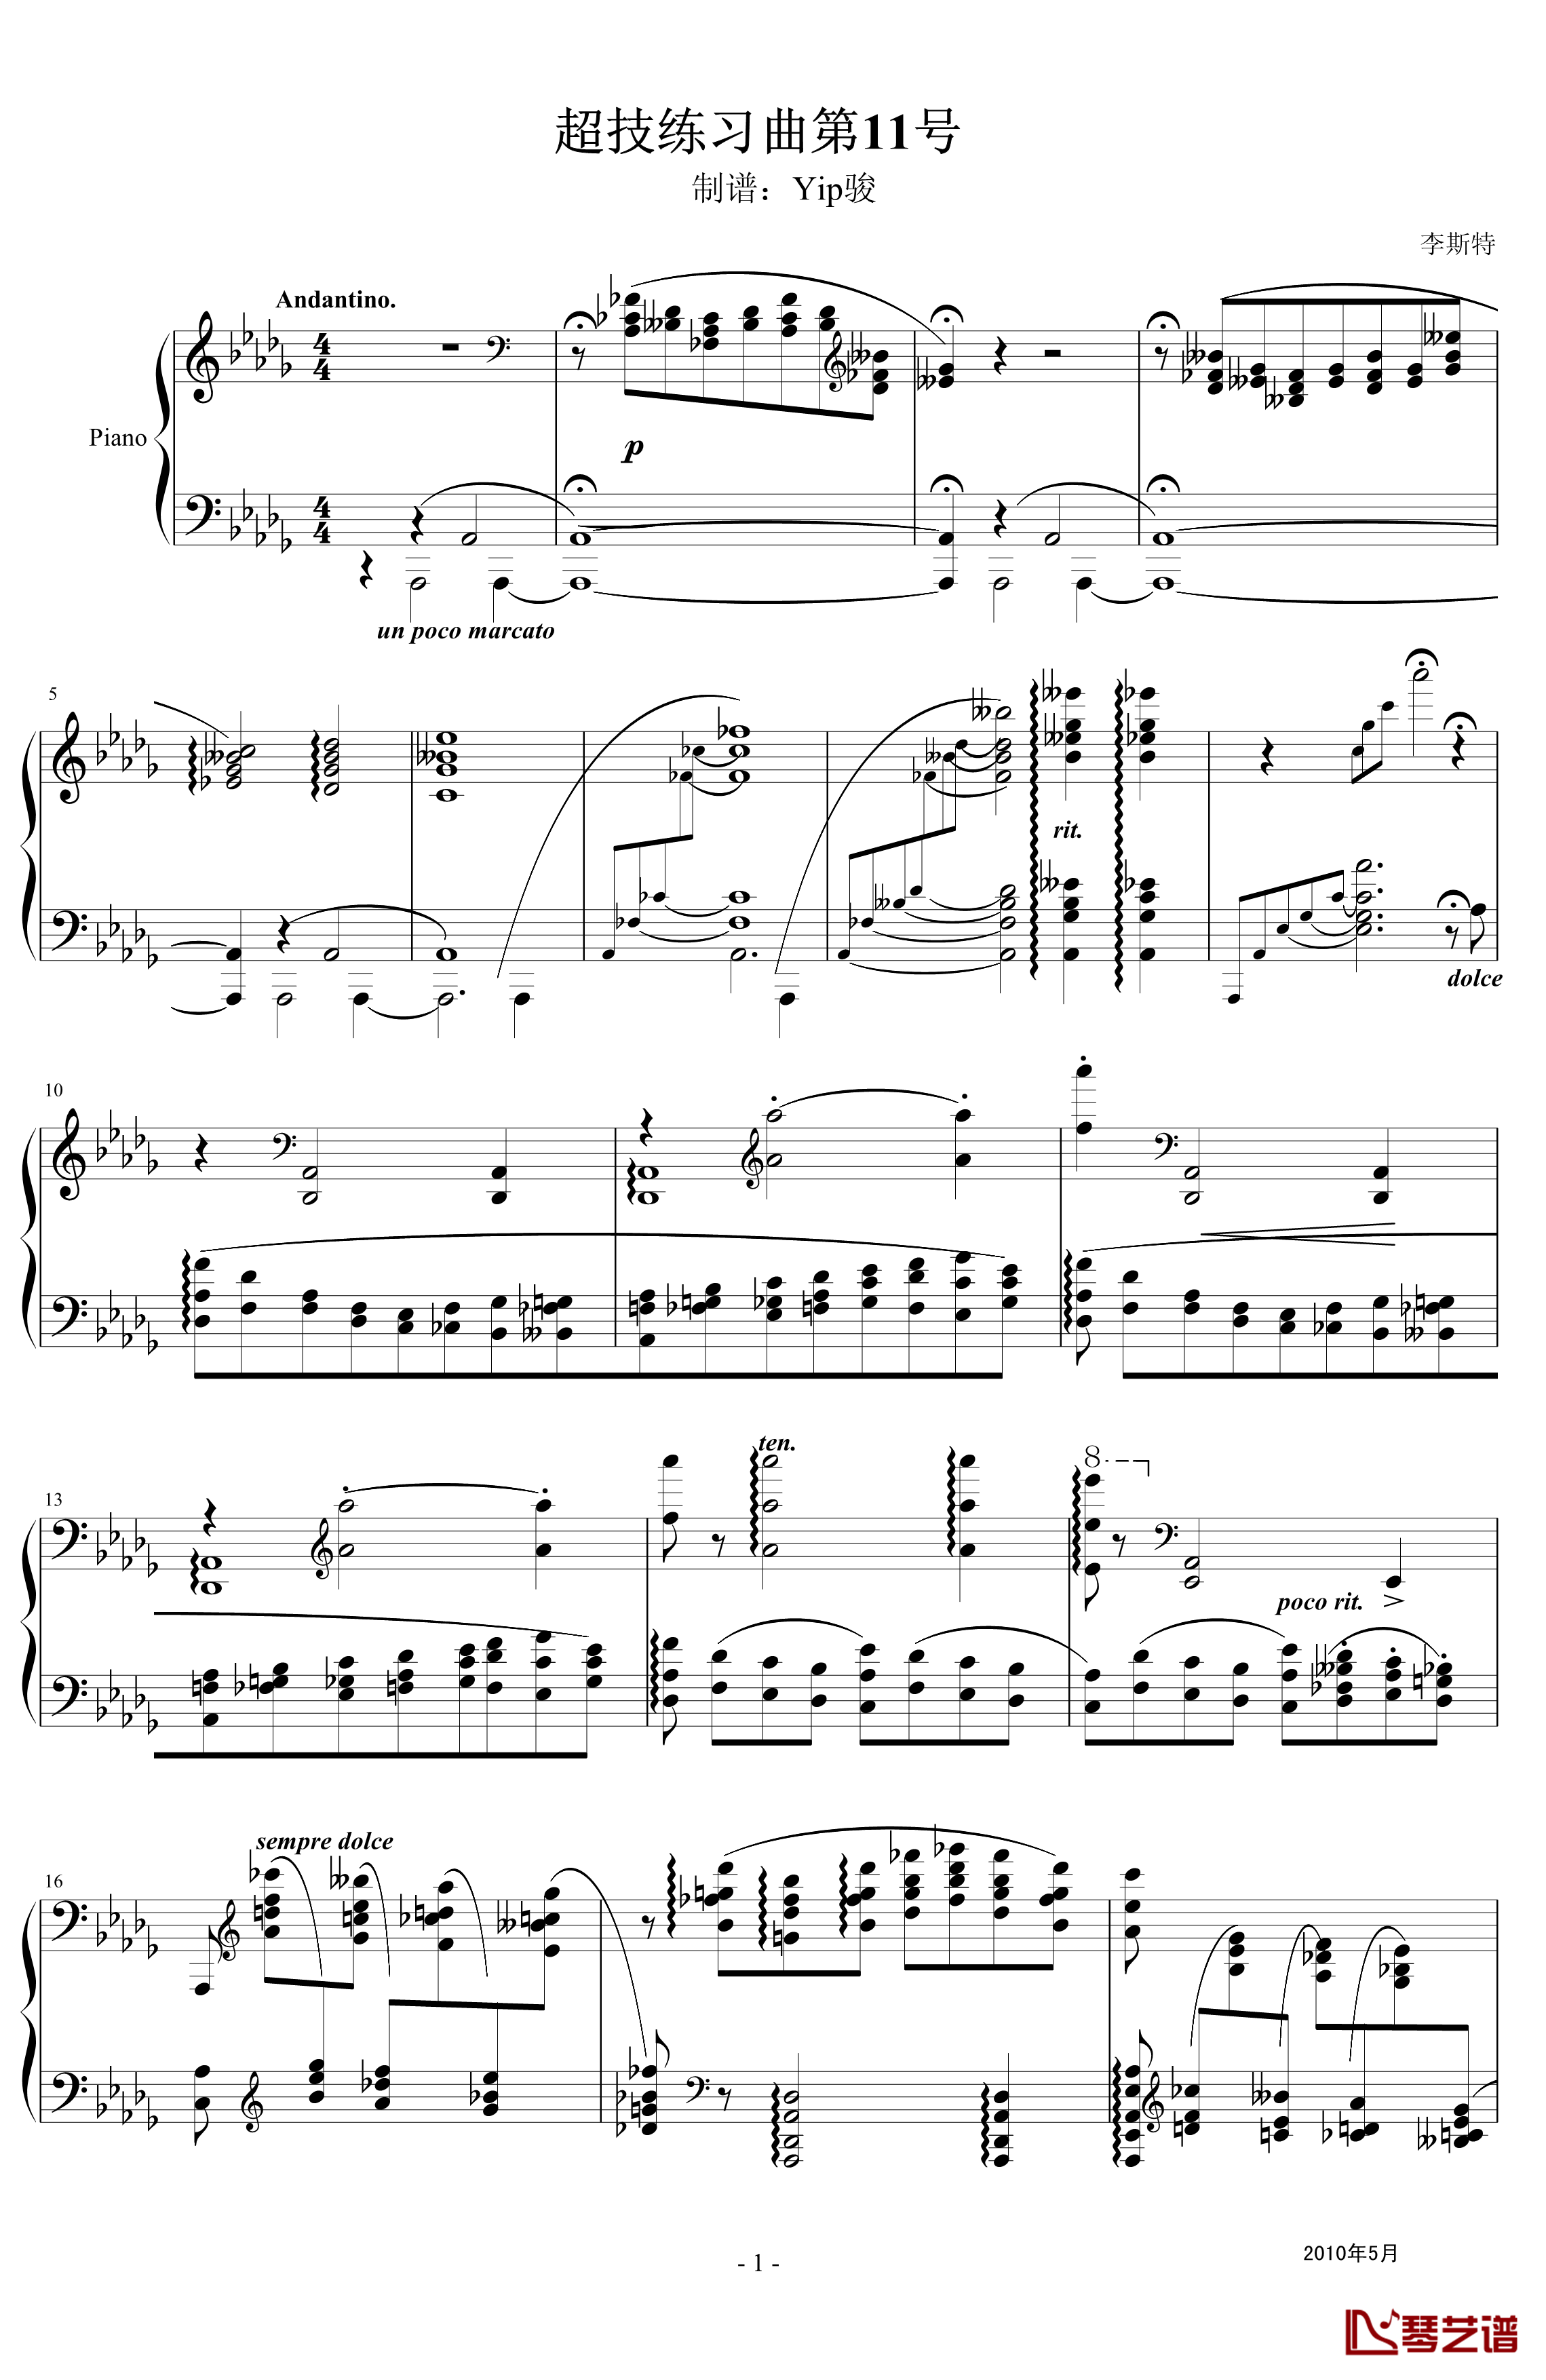 超技练习曲第11号钢琴谱-夜之和谐-李斯特1